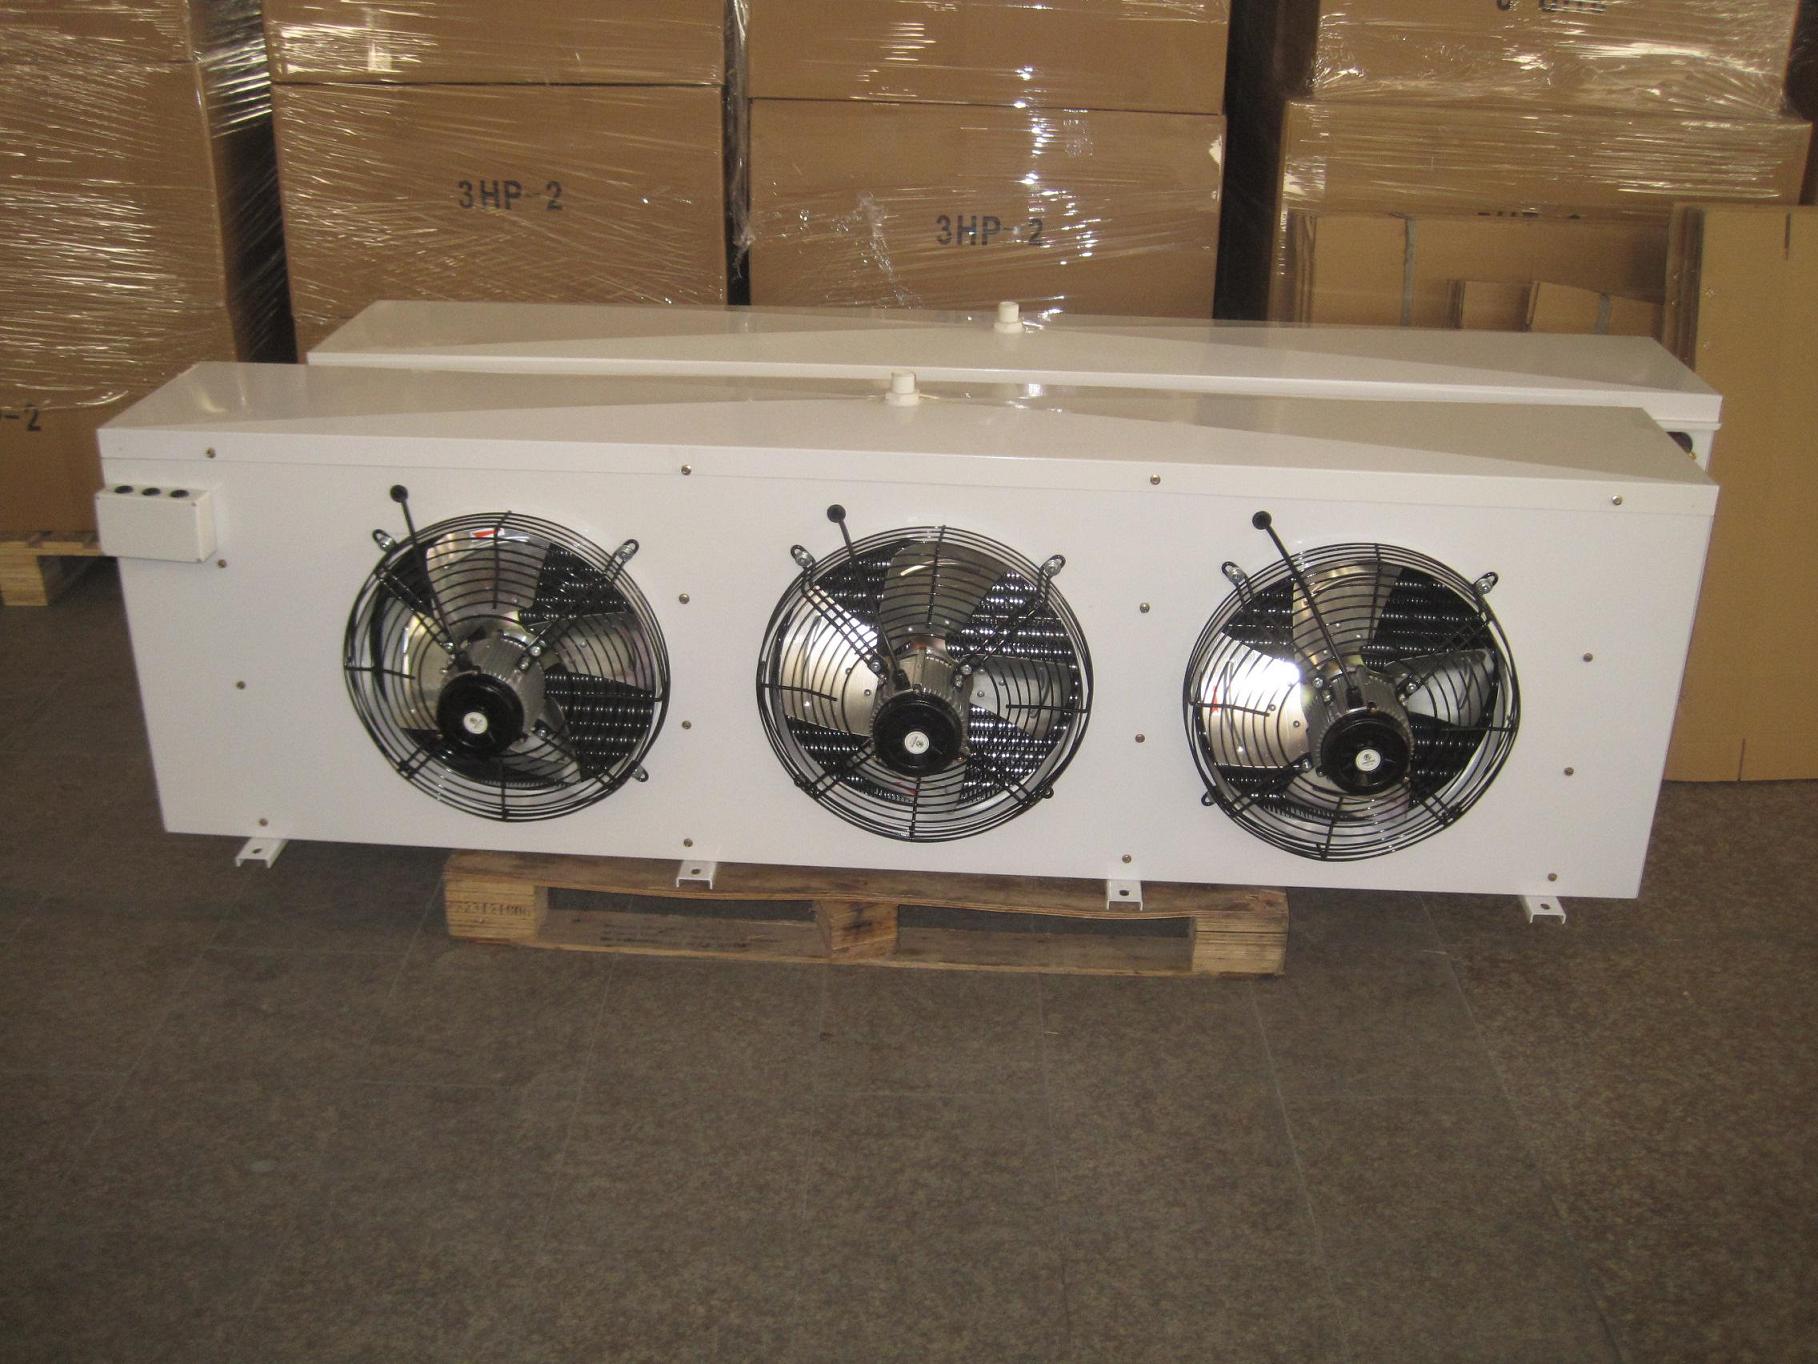 Refrigerador evaporativo de Unit del aire para el congelador